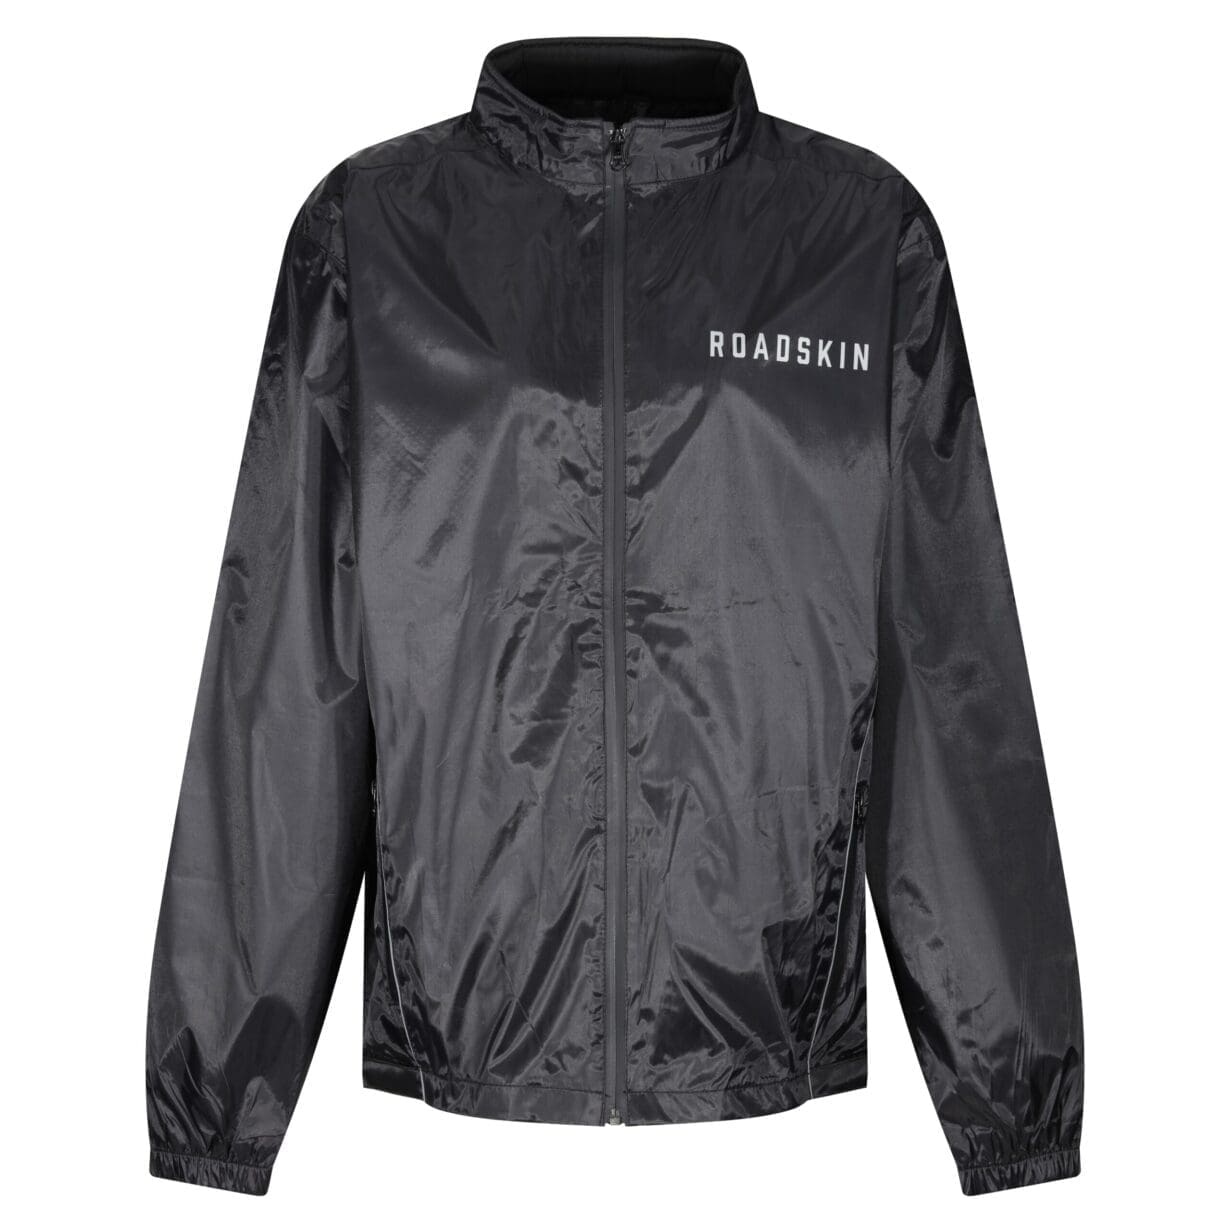 KIT: New waterproof jacket from Roadskin